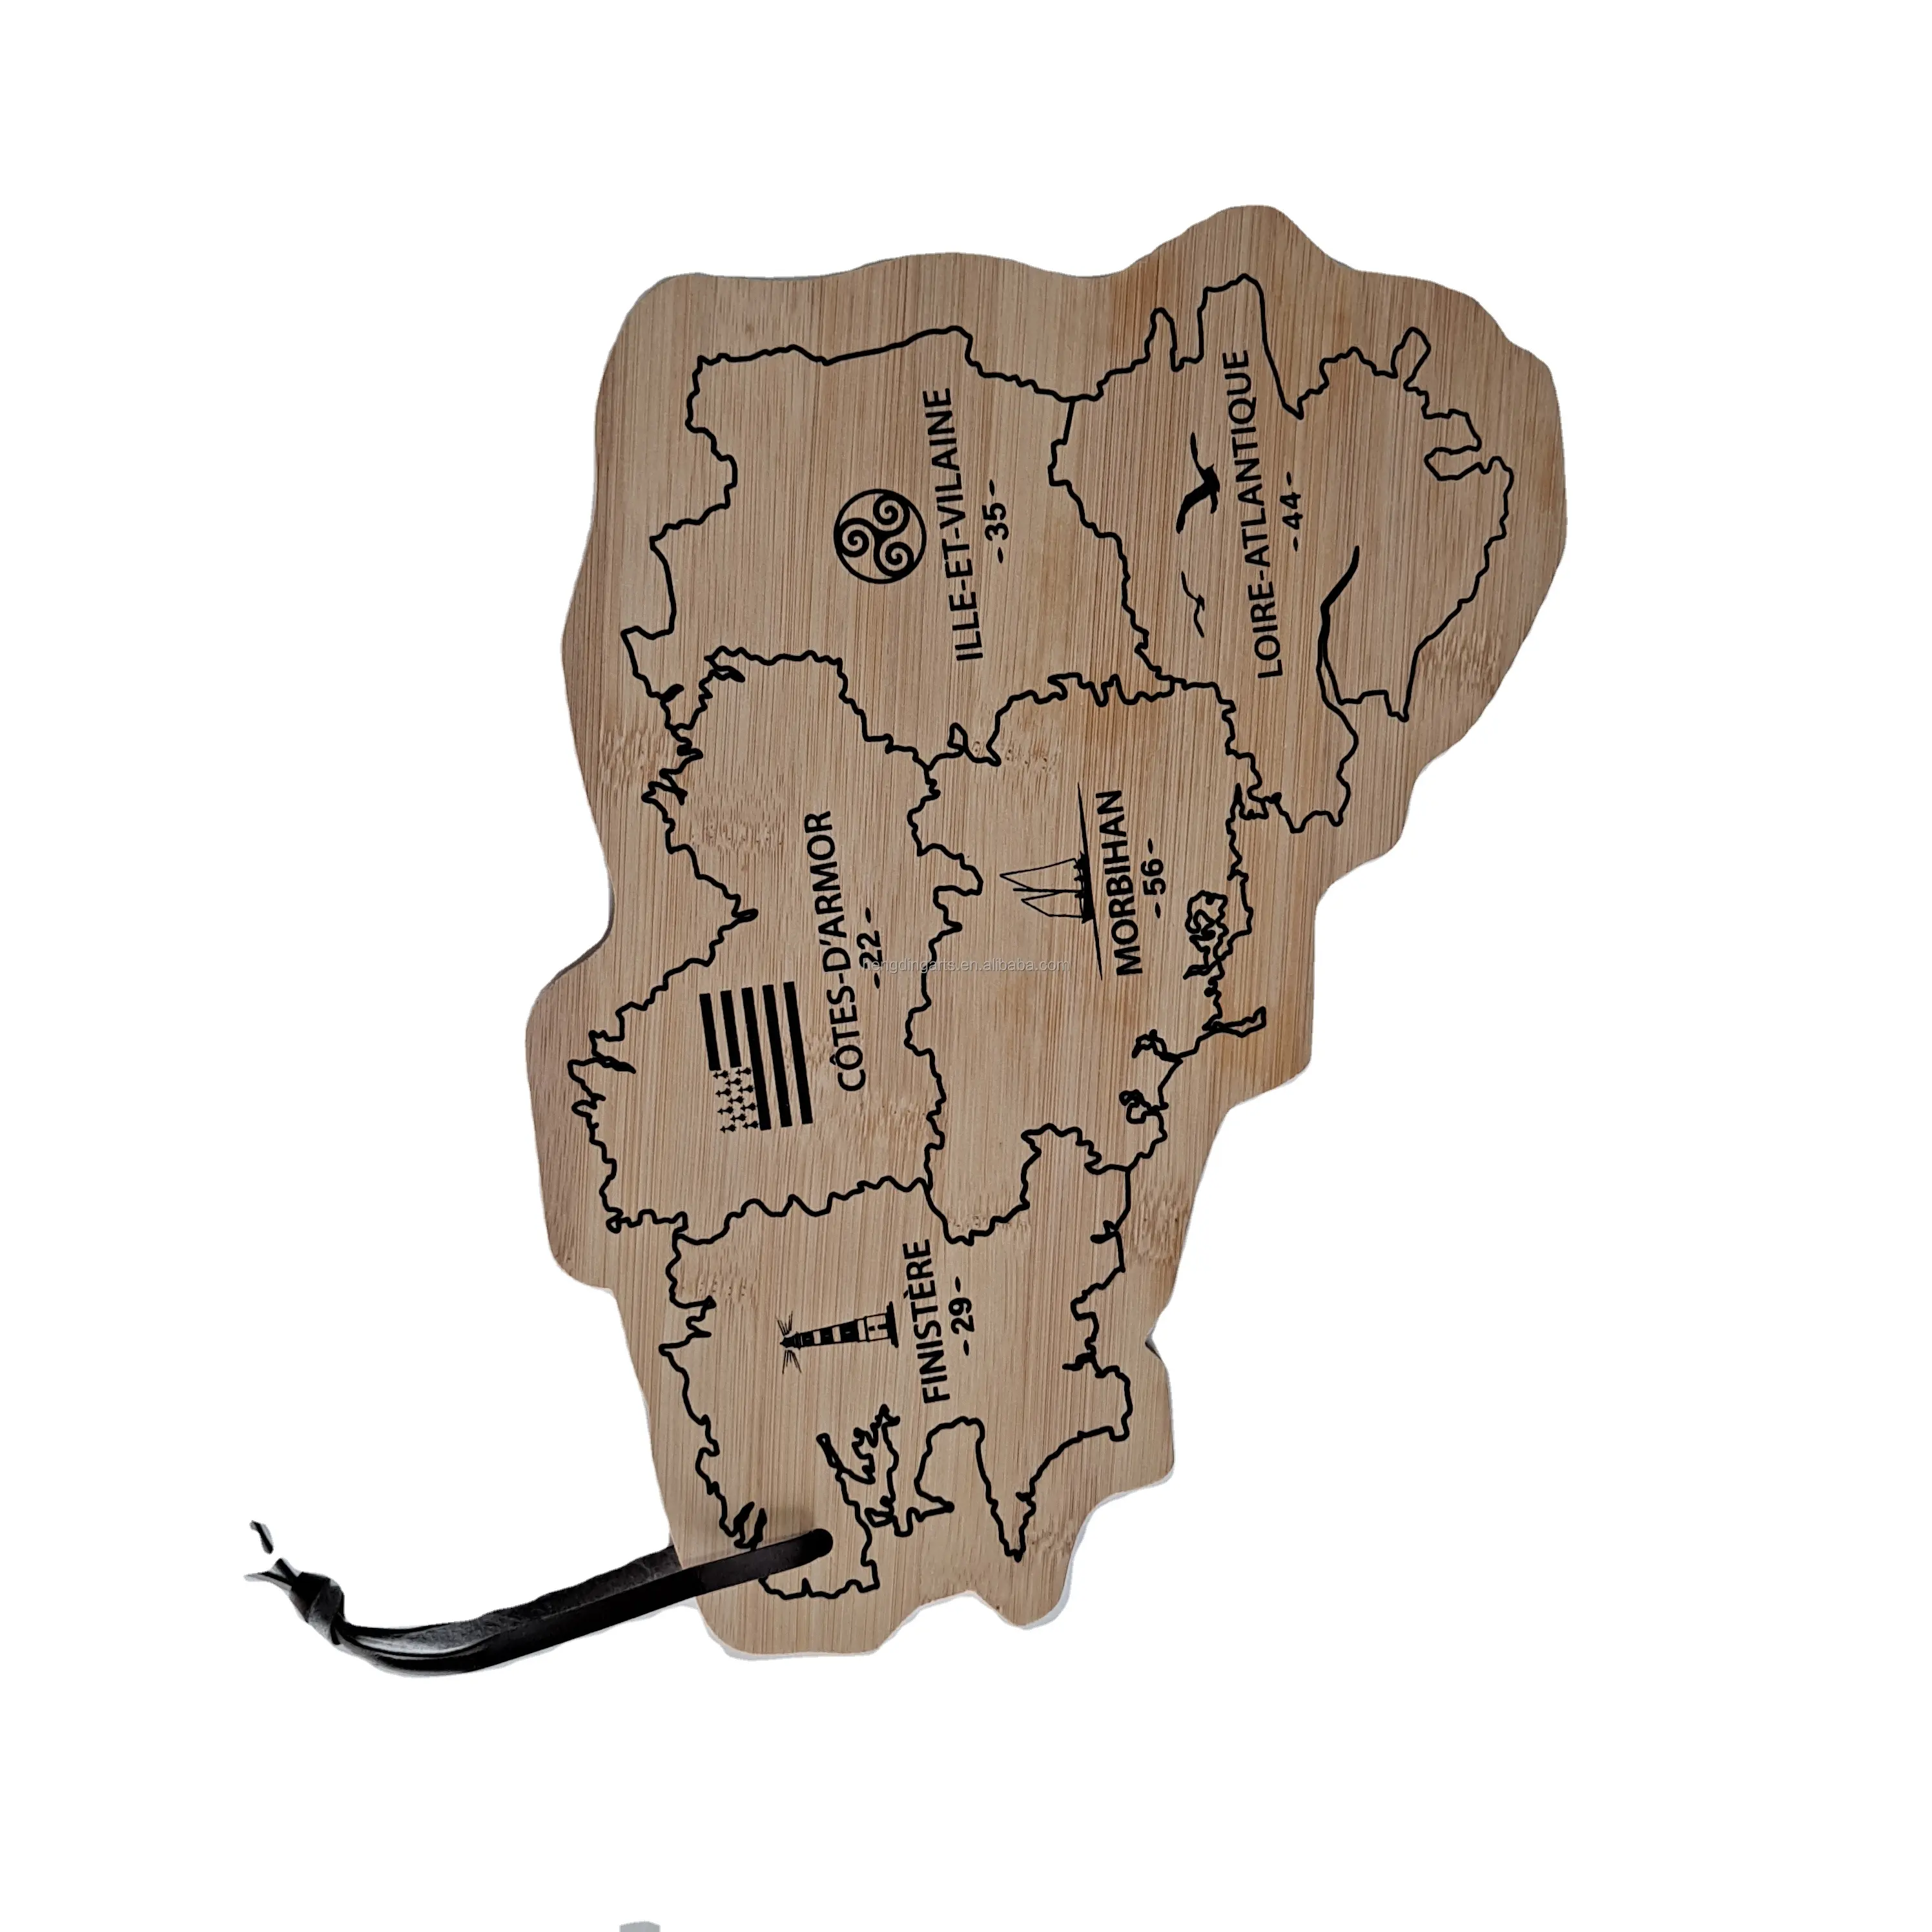 لوازم الخرائط الفنية والحرفية ، لوحة خلفية محفورة على خريطة الخشب ، ديكور حائط بلد العالم ، خشبي مخصص